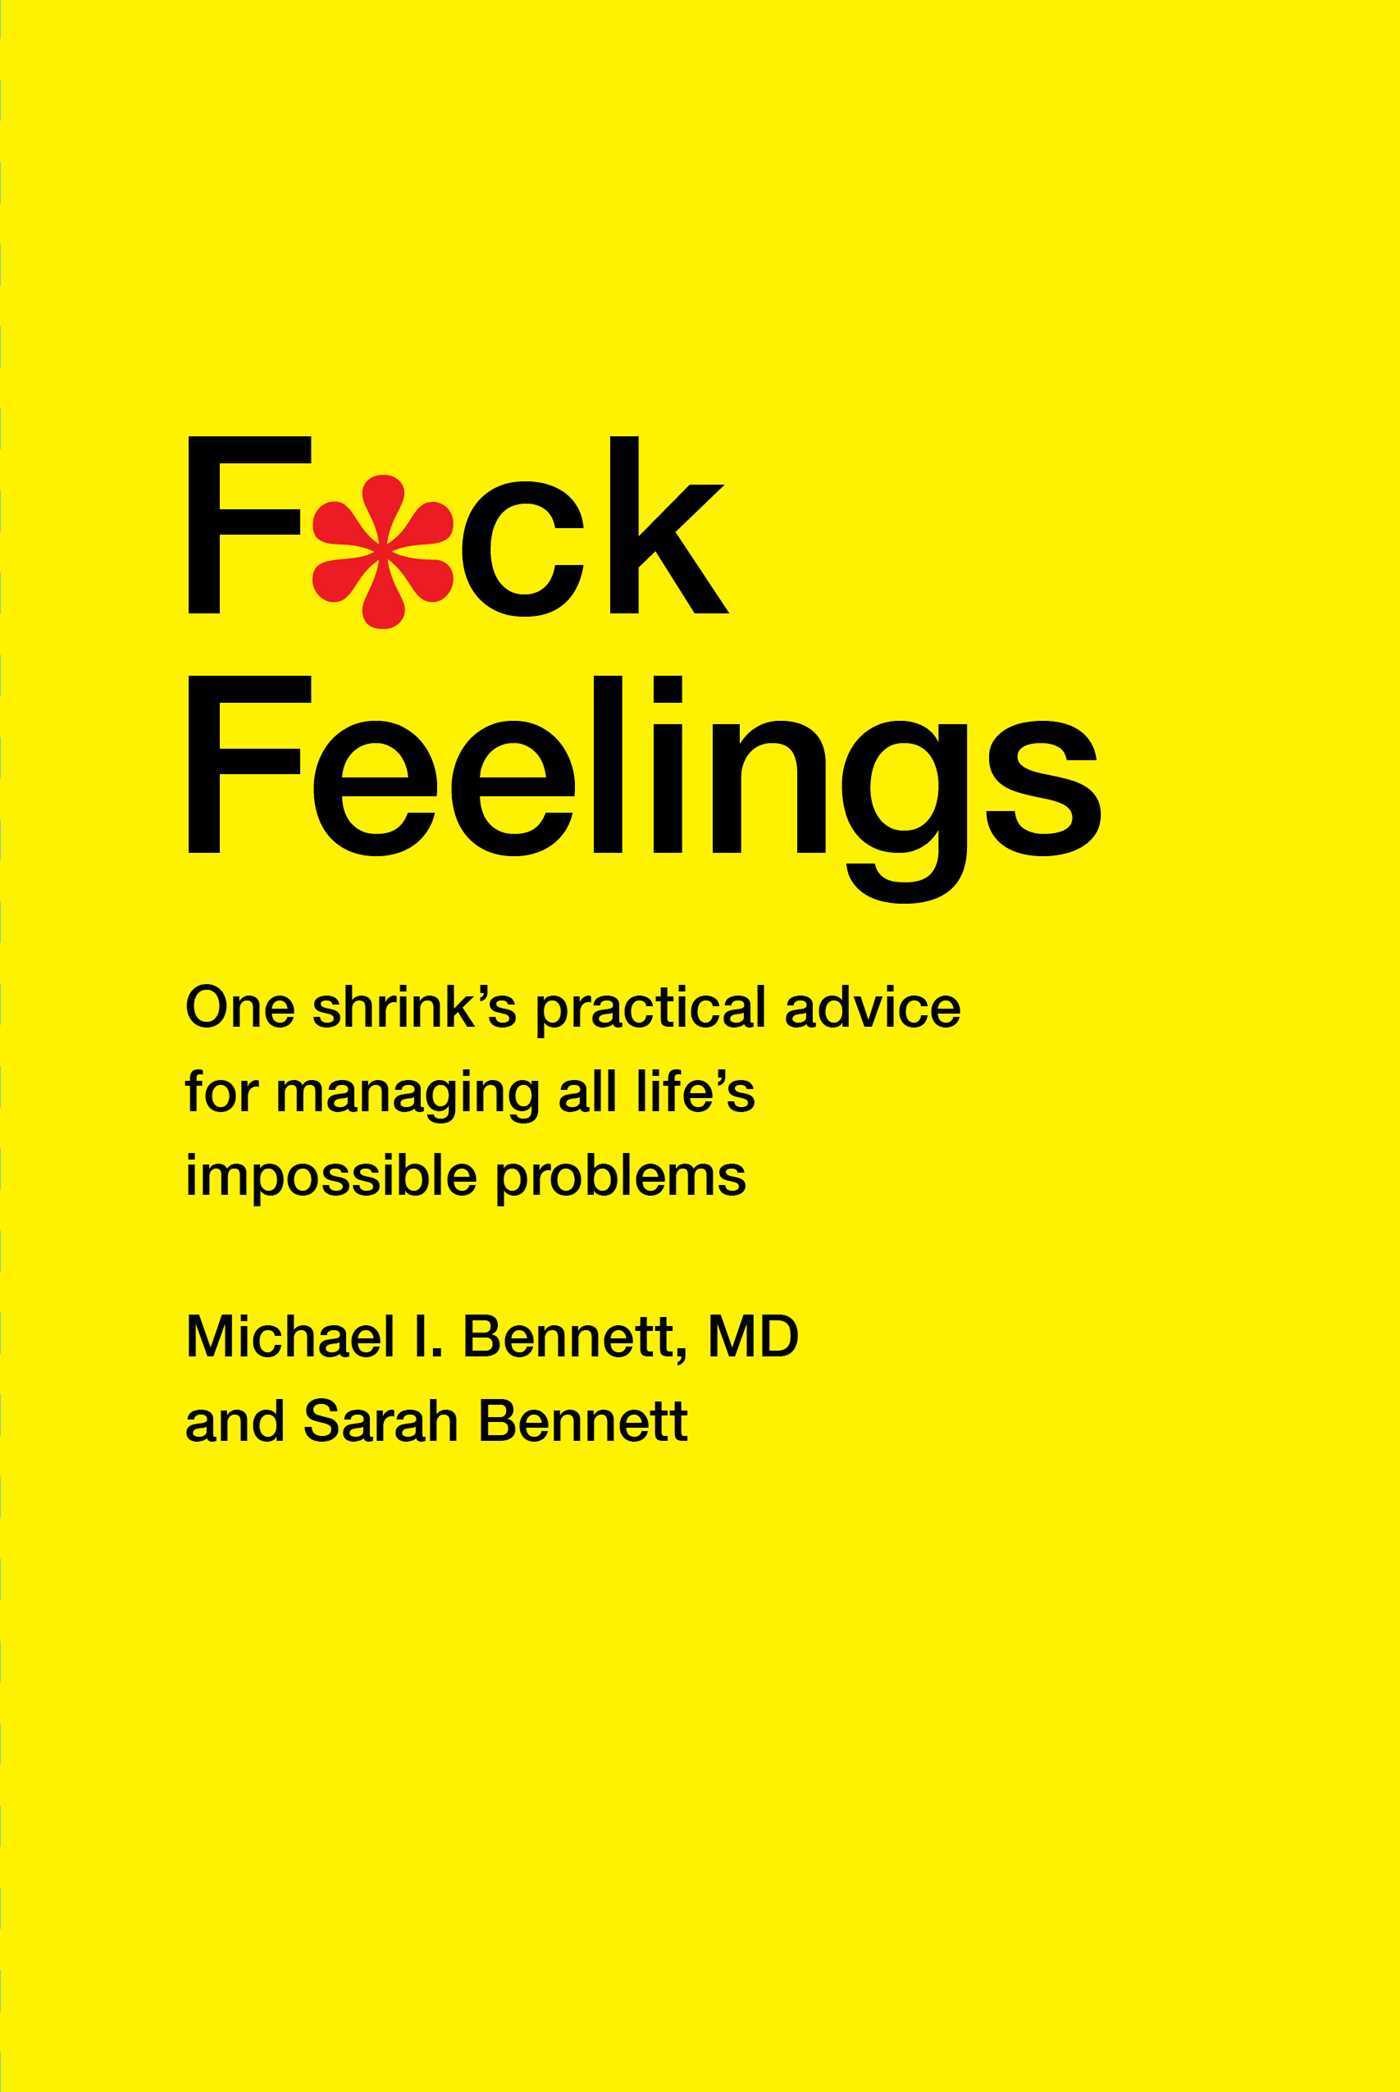 F*ck Feelings By Michael I. Bennett